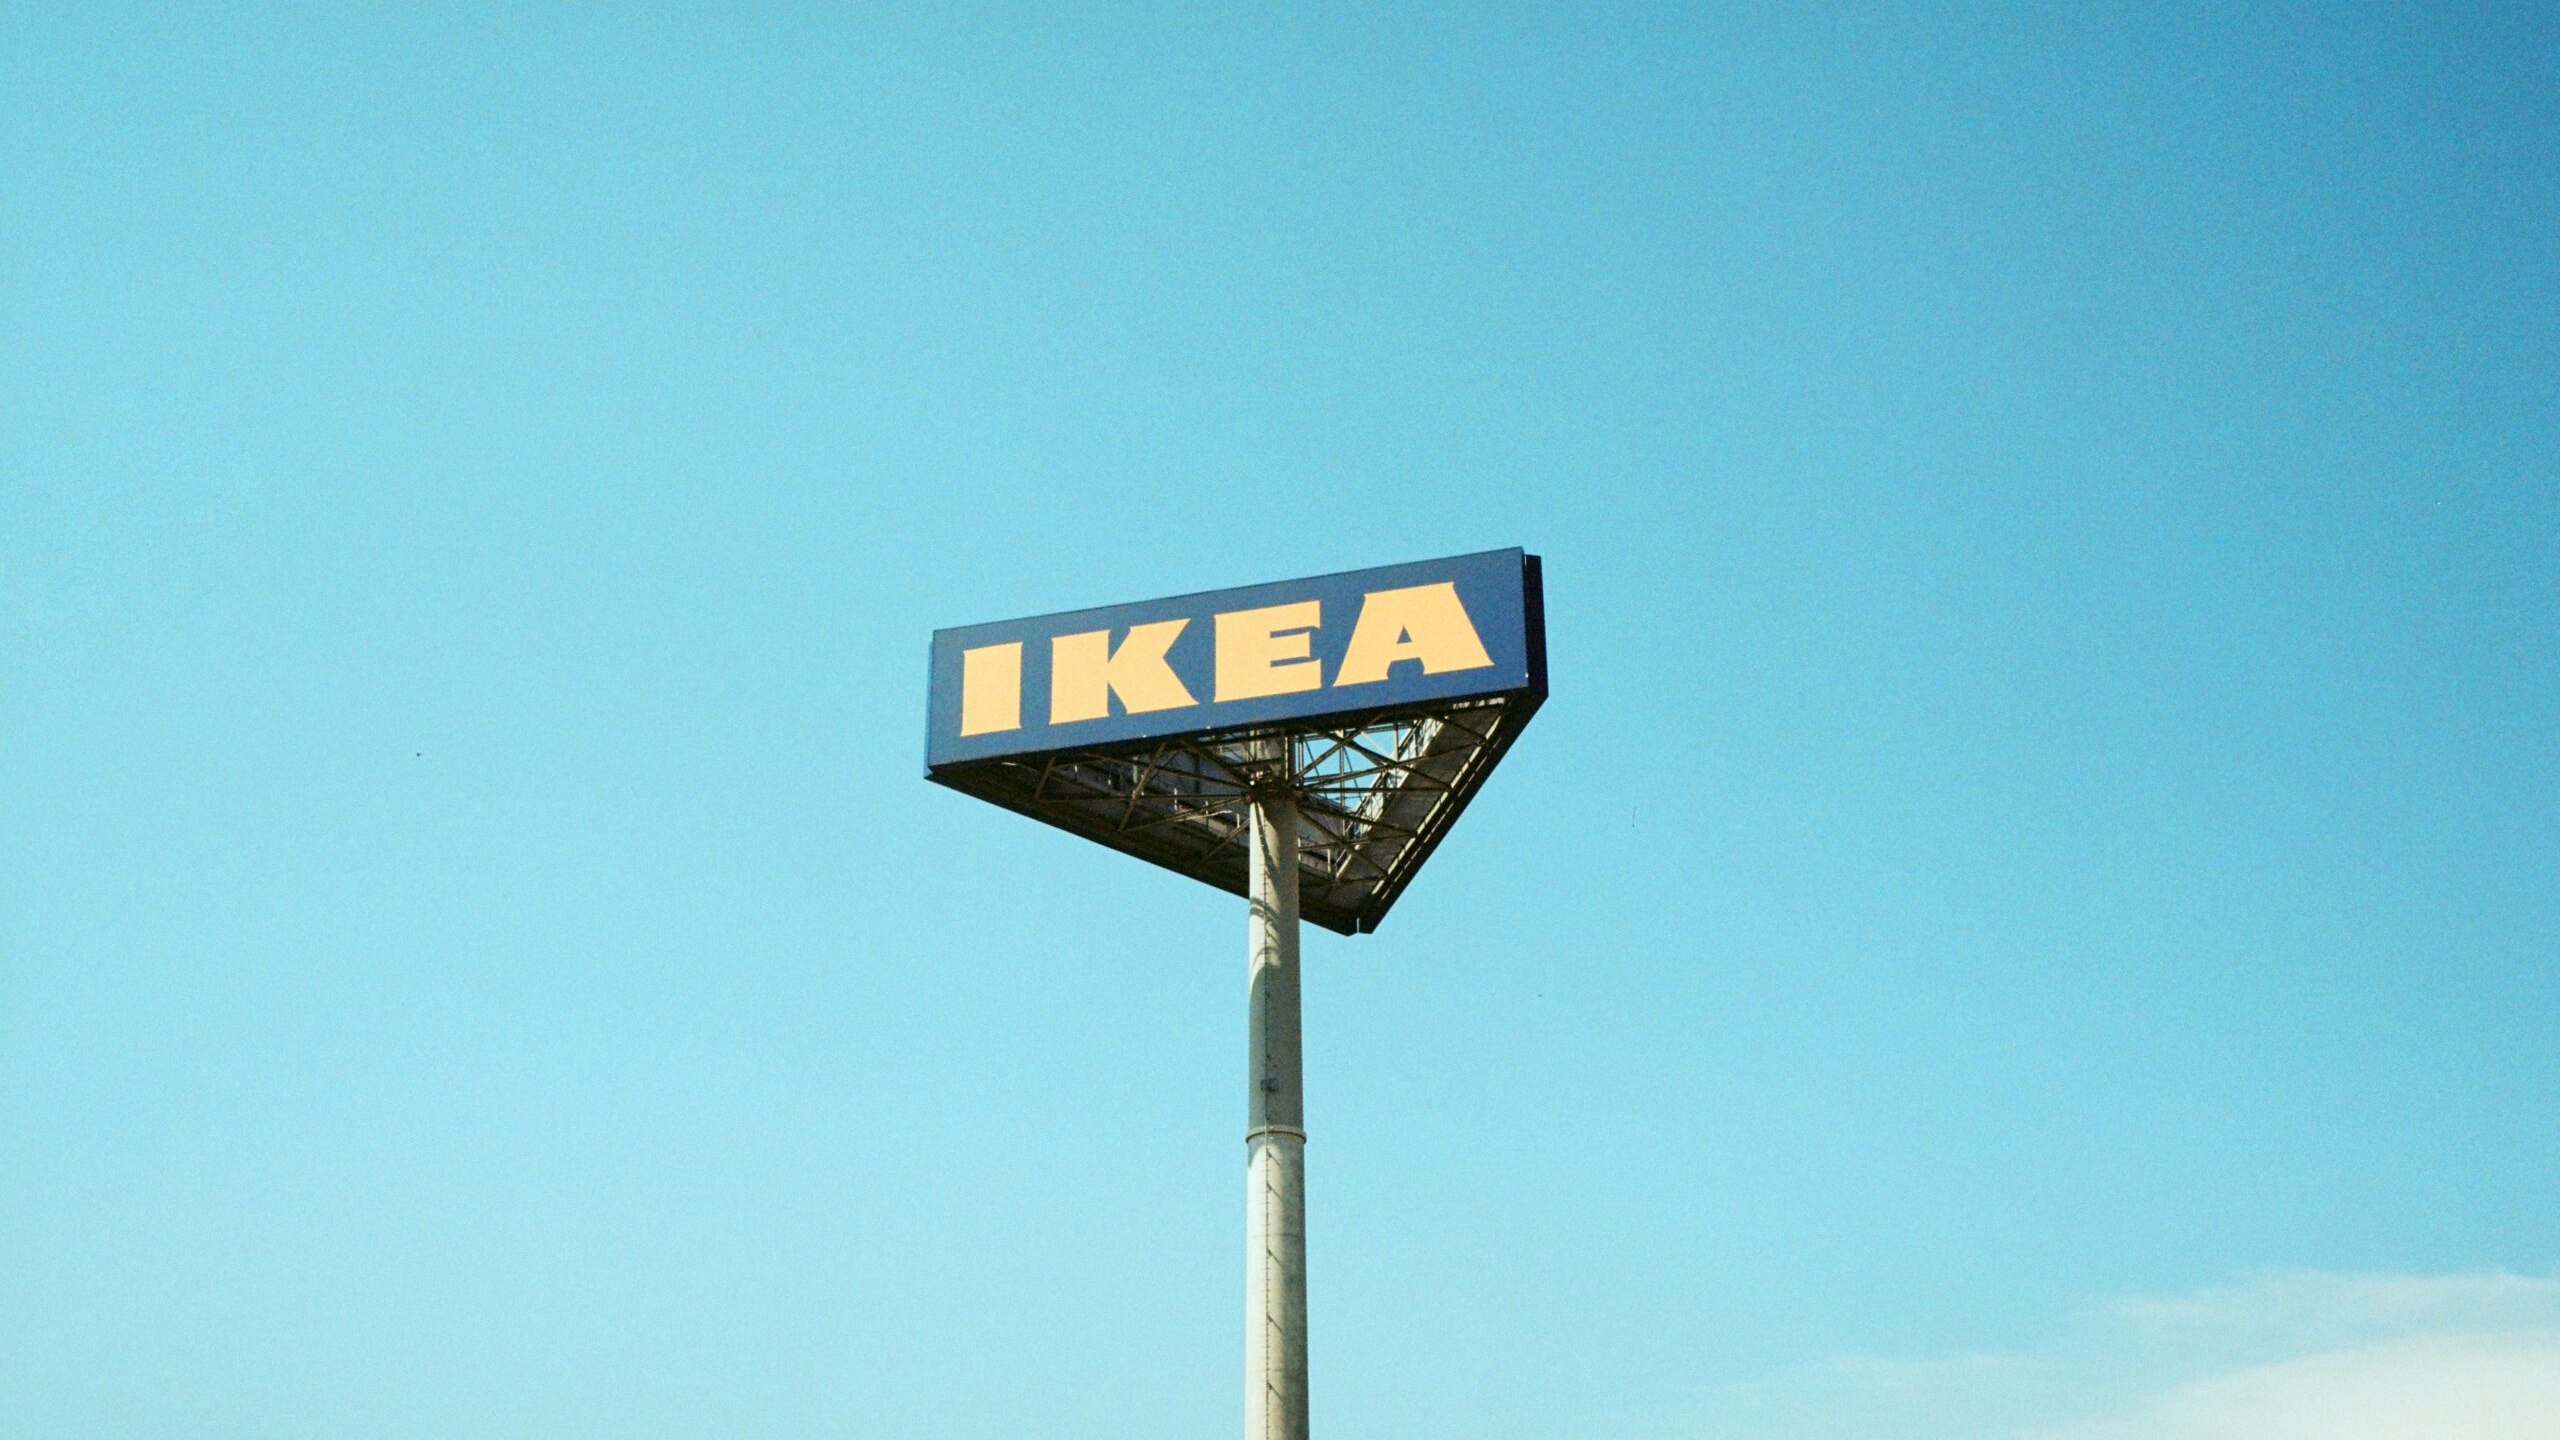 Строительство развязки с Кудрово задержалось из-за принадлежащего IKEA участка земли